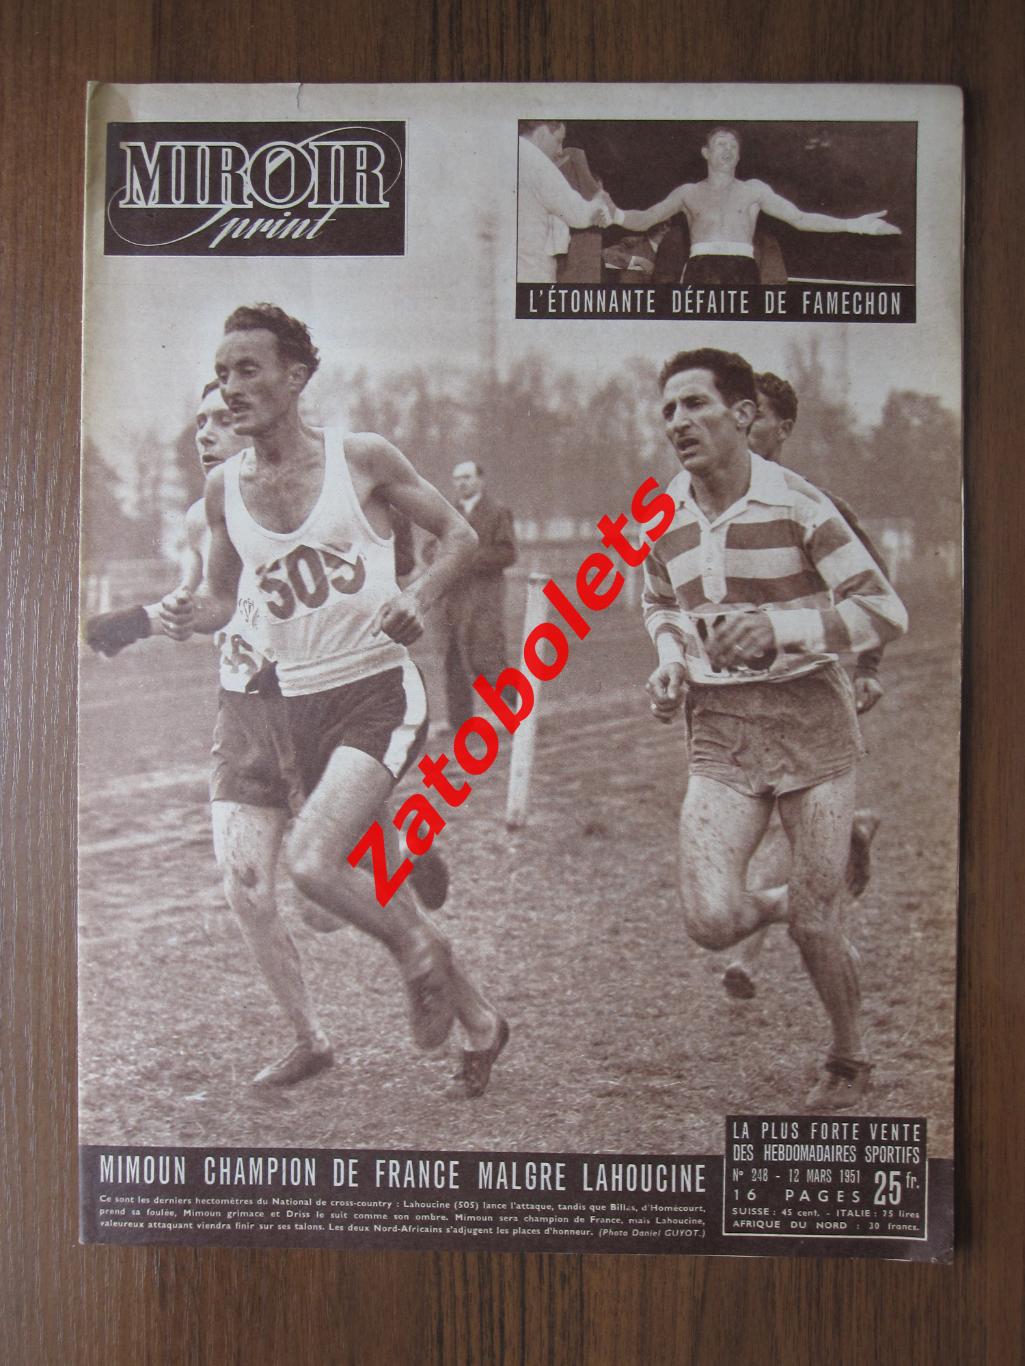 Журнал Miroir-Sprint/Франция №248 - 12.03.1951 Чемпионат мира по хоккею 1951